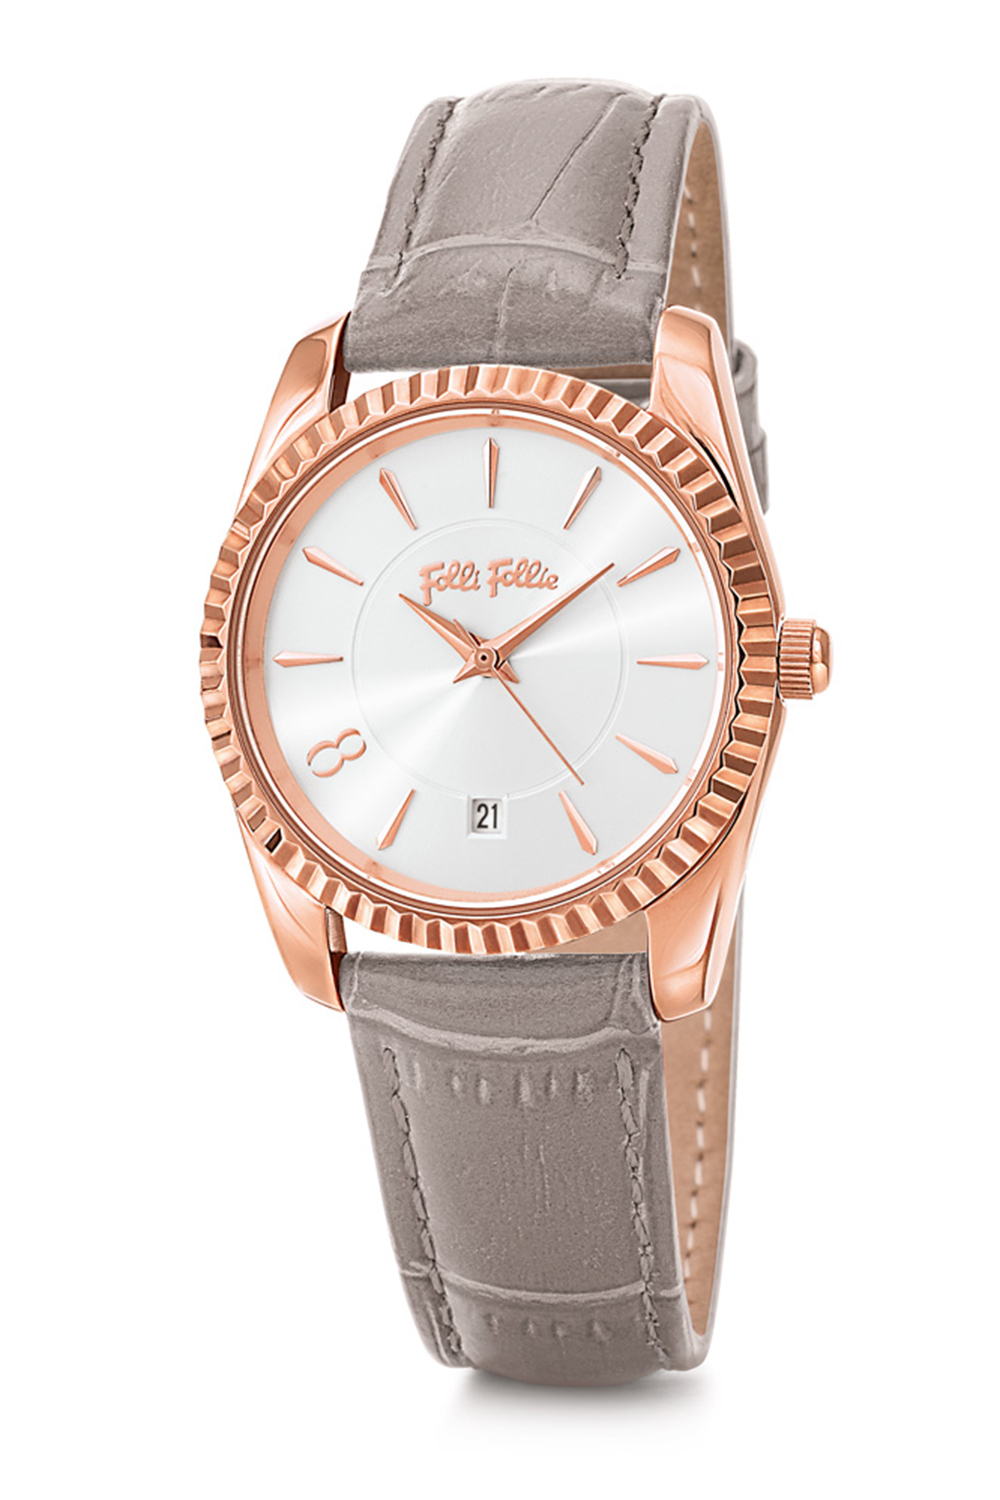 FOLLI FOLLIE – Γυναικείο ρολόι με δερμάτινο λουράκι FOLLI FOLLIE CHRONOS TALES ασημί WF18R042SDS-GA